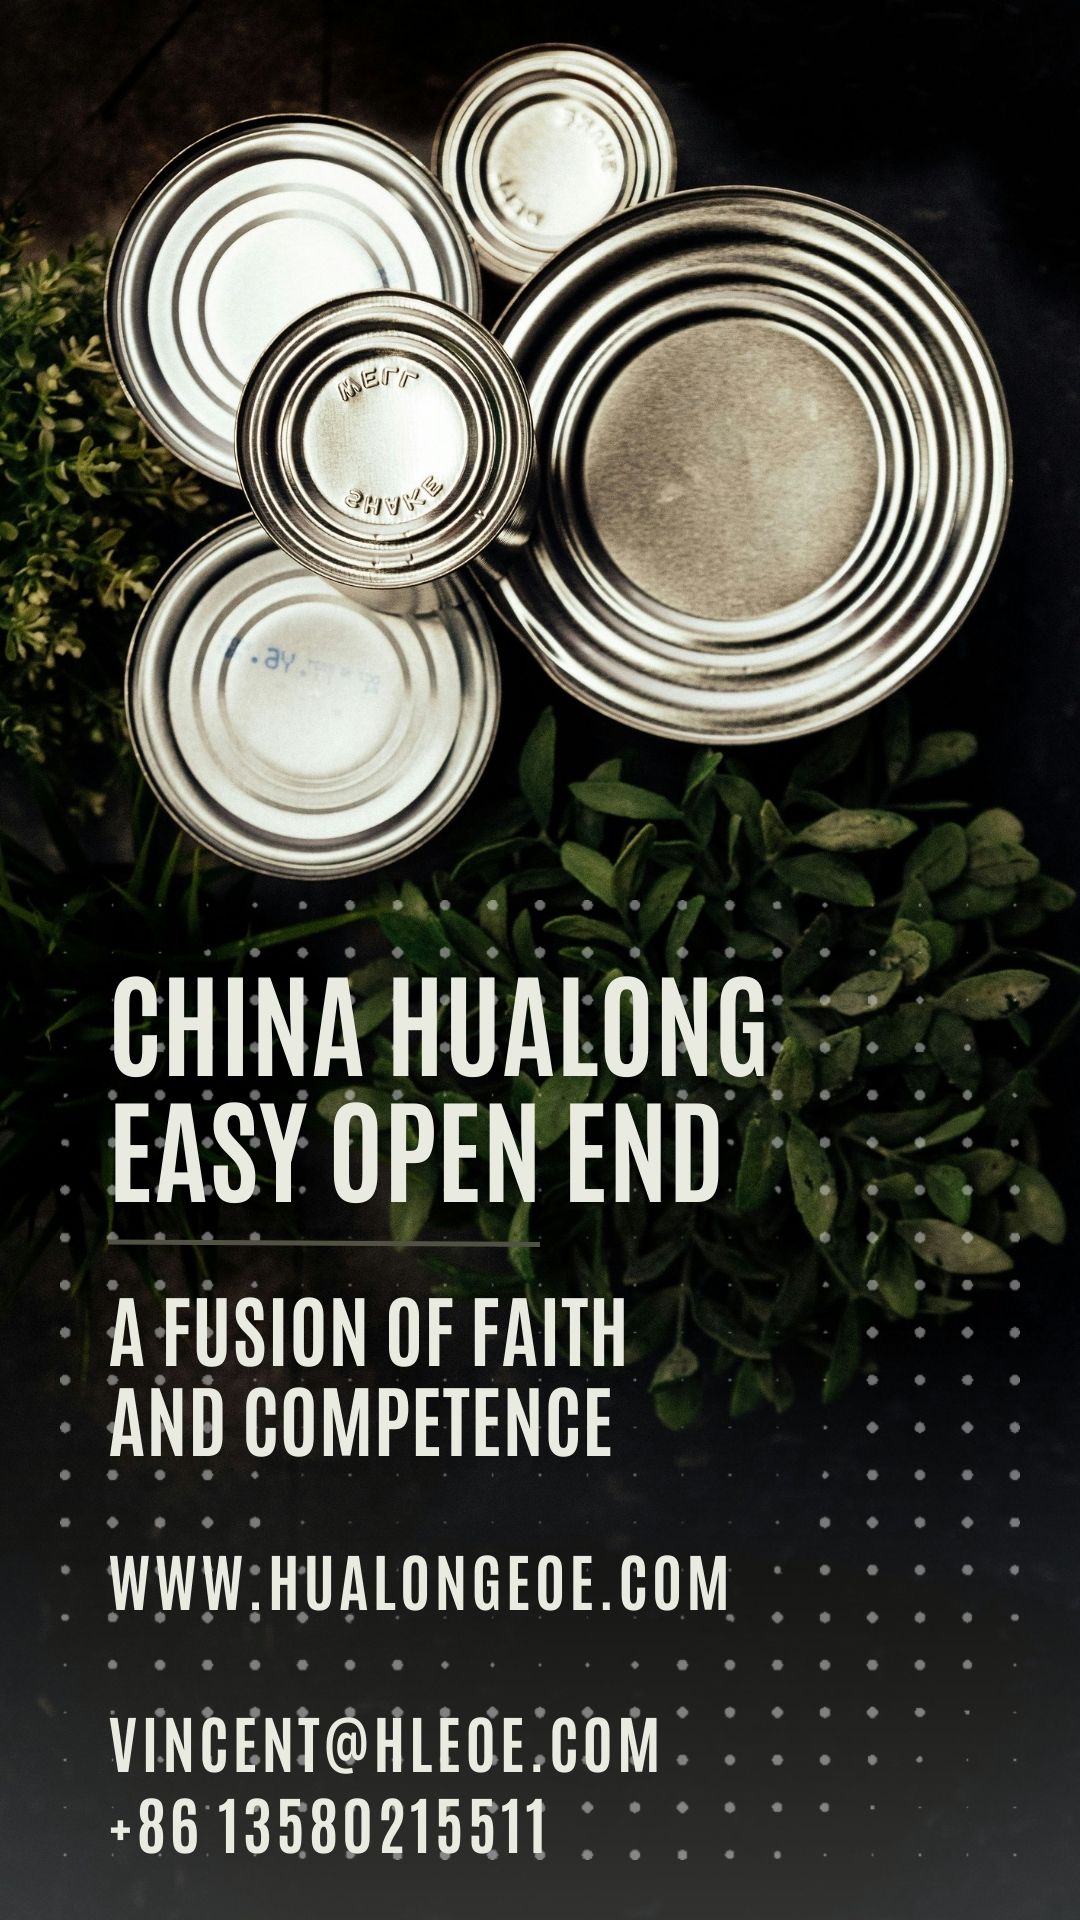 Kina Hualong EOE: En fusjon av tro og kompetanse